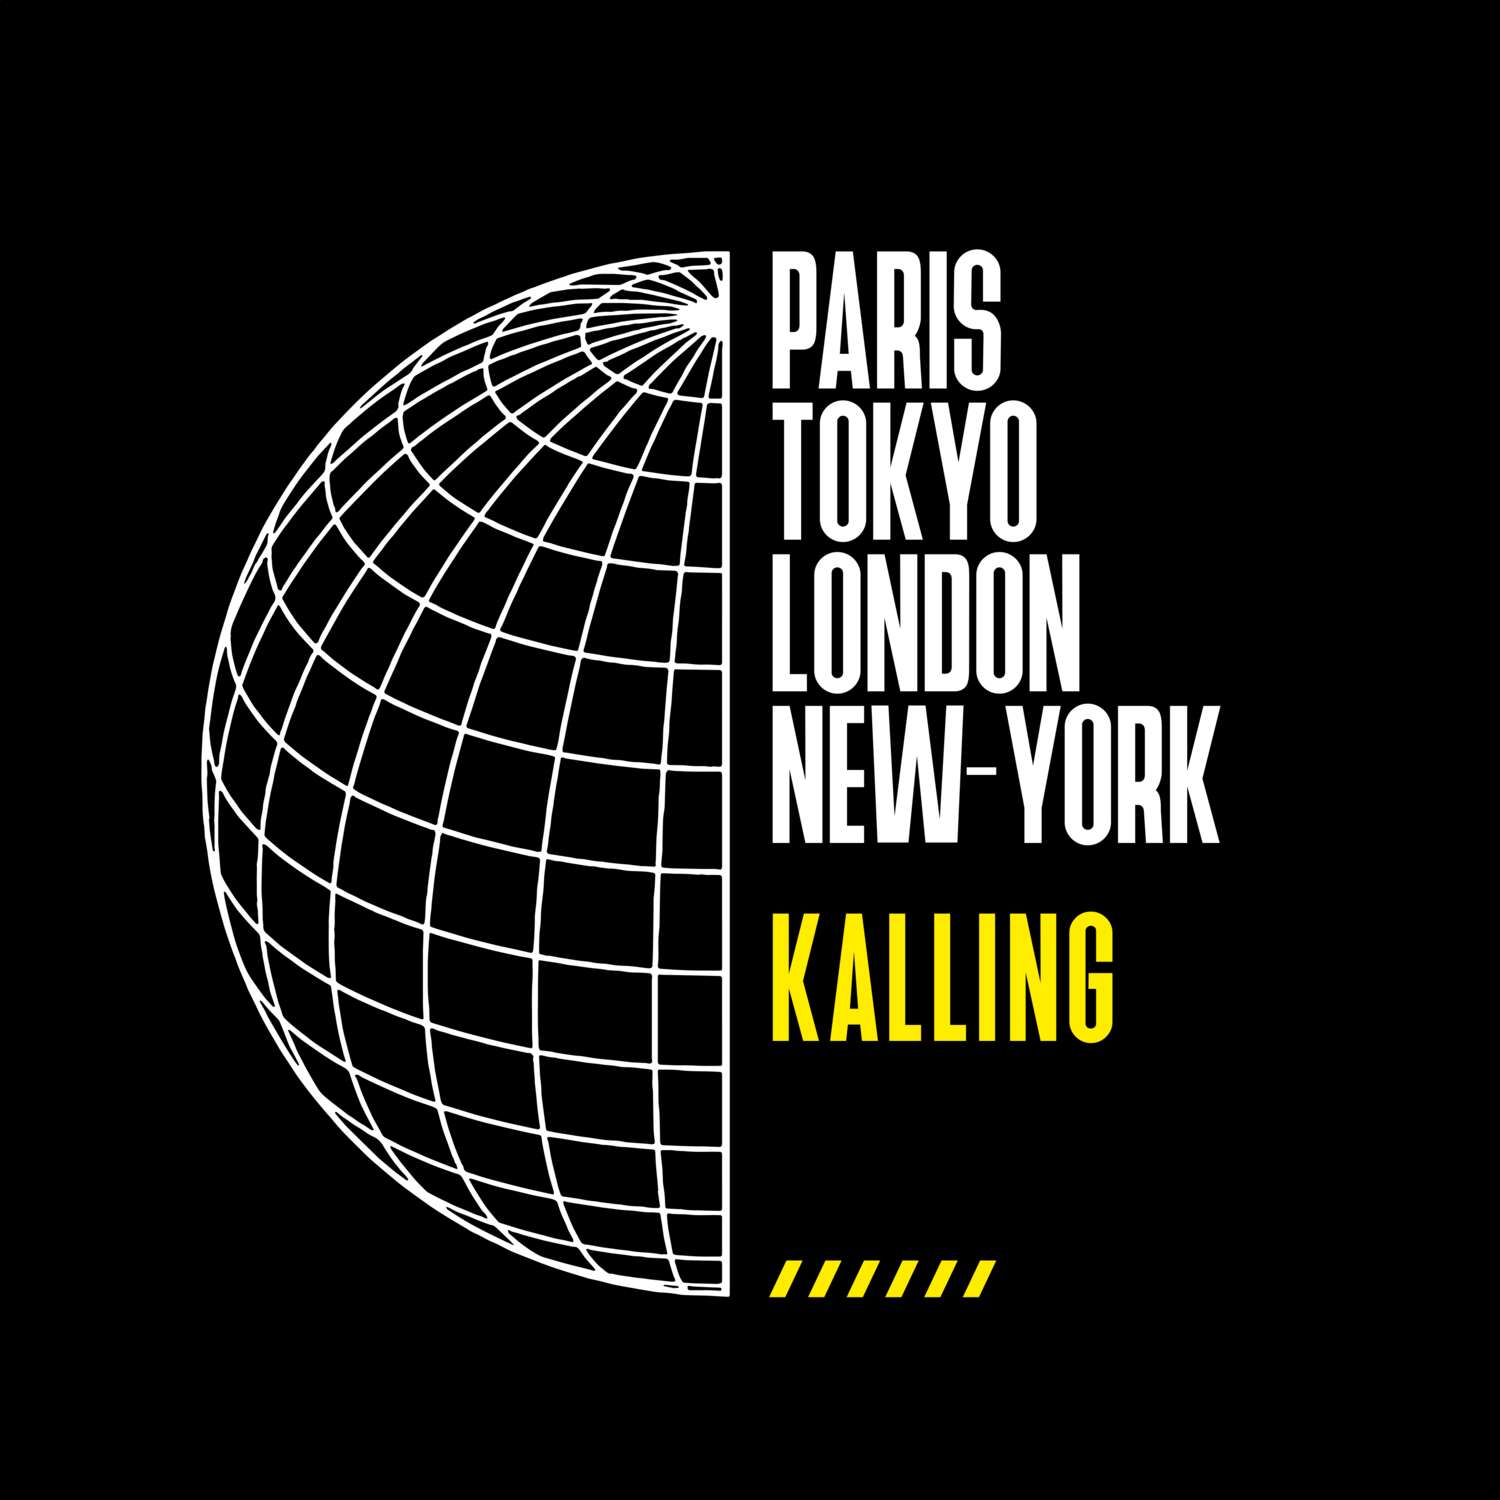 Kalling T-Shirt »Paris Tokyo London«